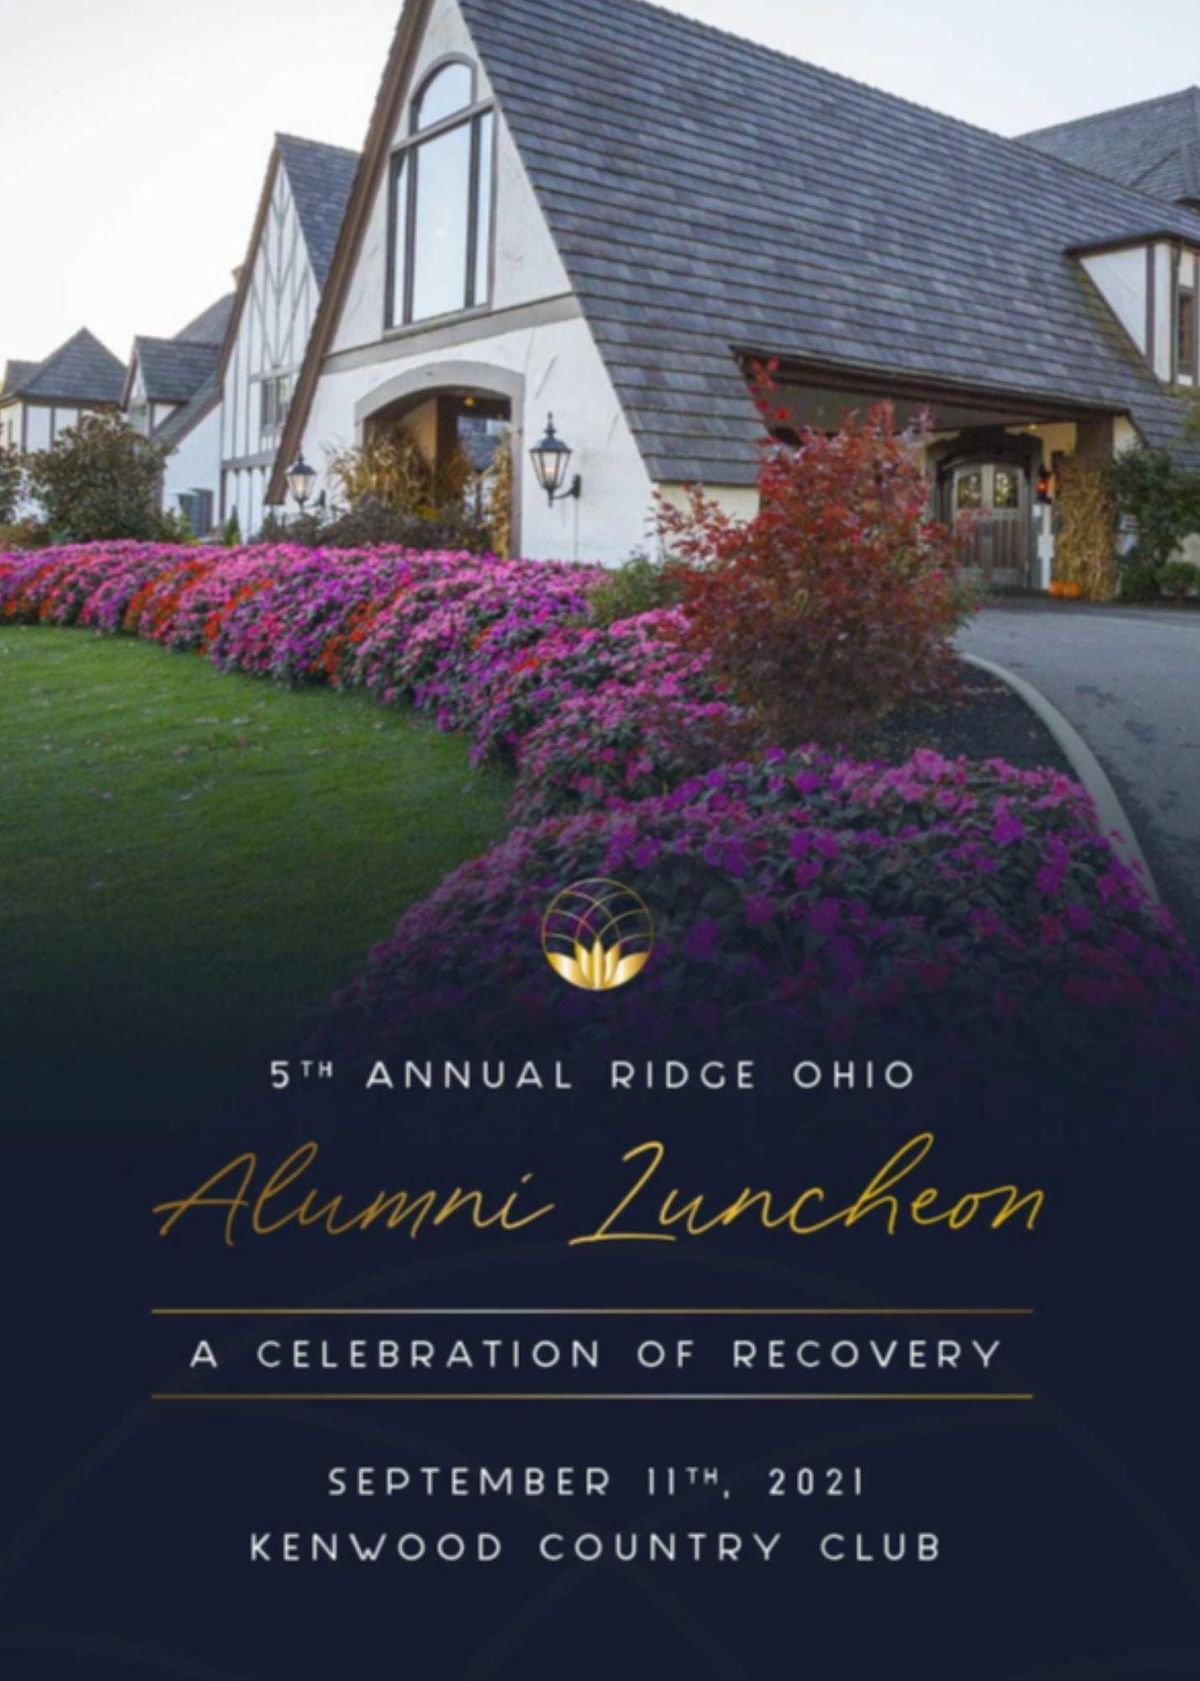 The Ridge Annual Alumni Luncheon